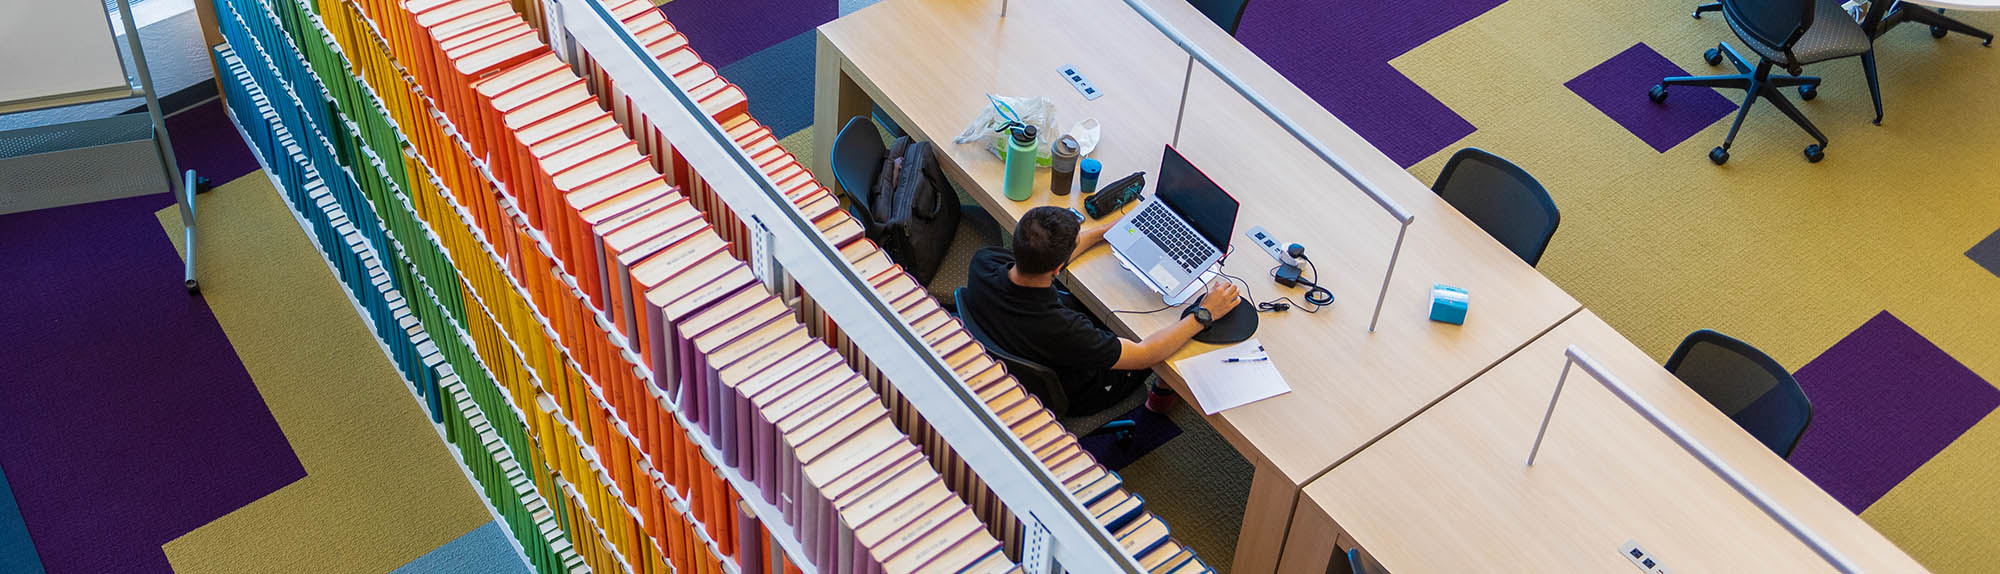 منظر من عين الطيور لشخص يدرس في مكتبة HSC مع مجموعة ملونة من الكتب خلفه